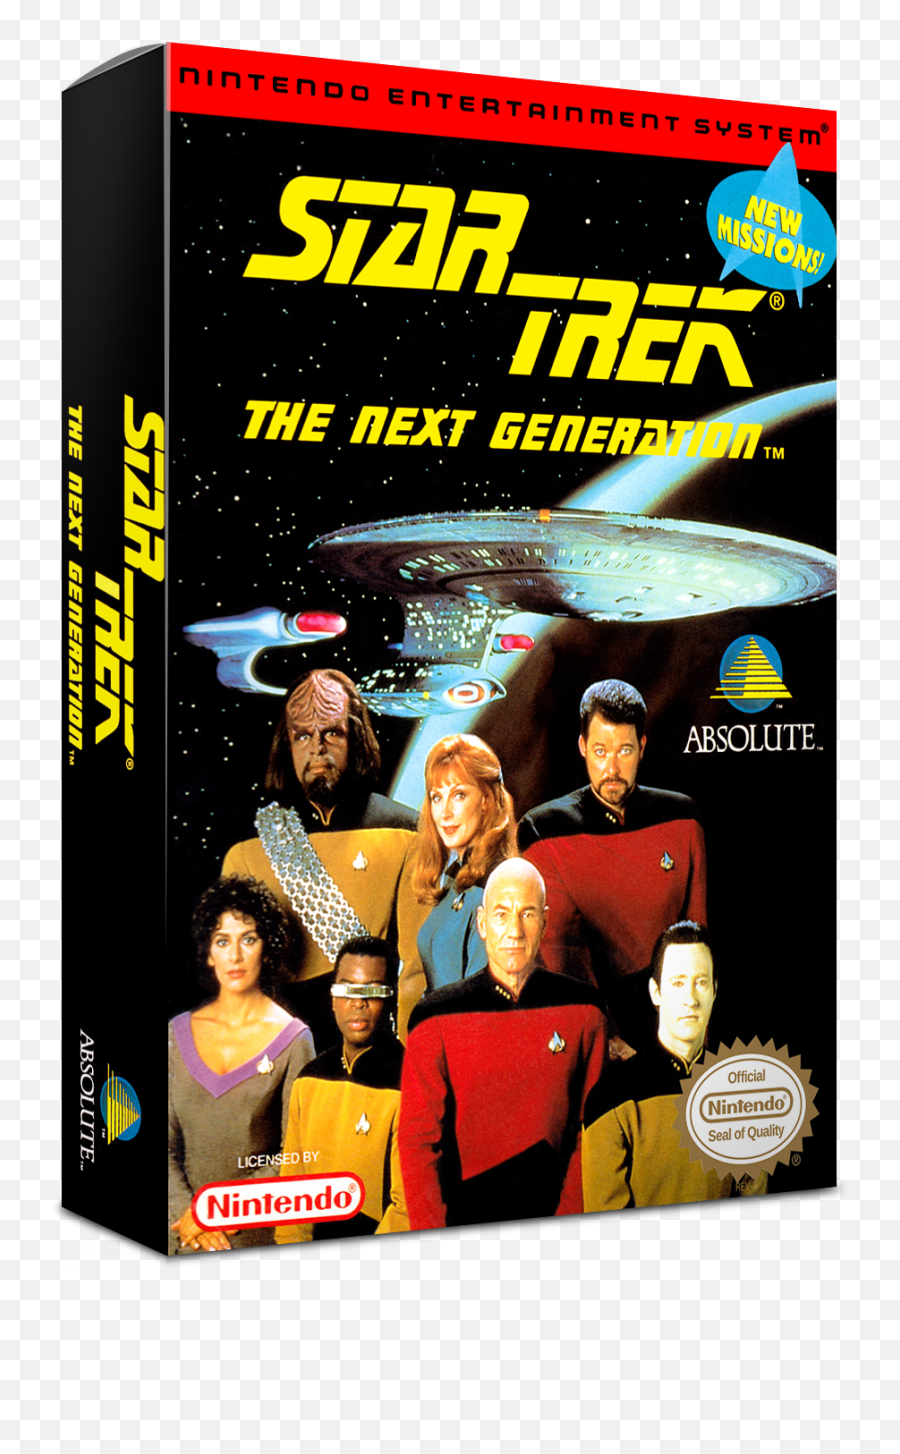 Star Trek The Next Generation Details - Launchbox Games Emoji,Star Trek Next Generation Logo